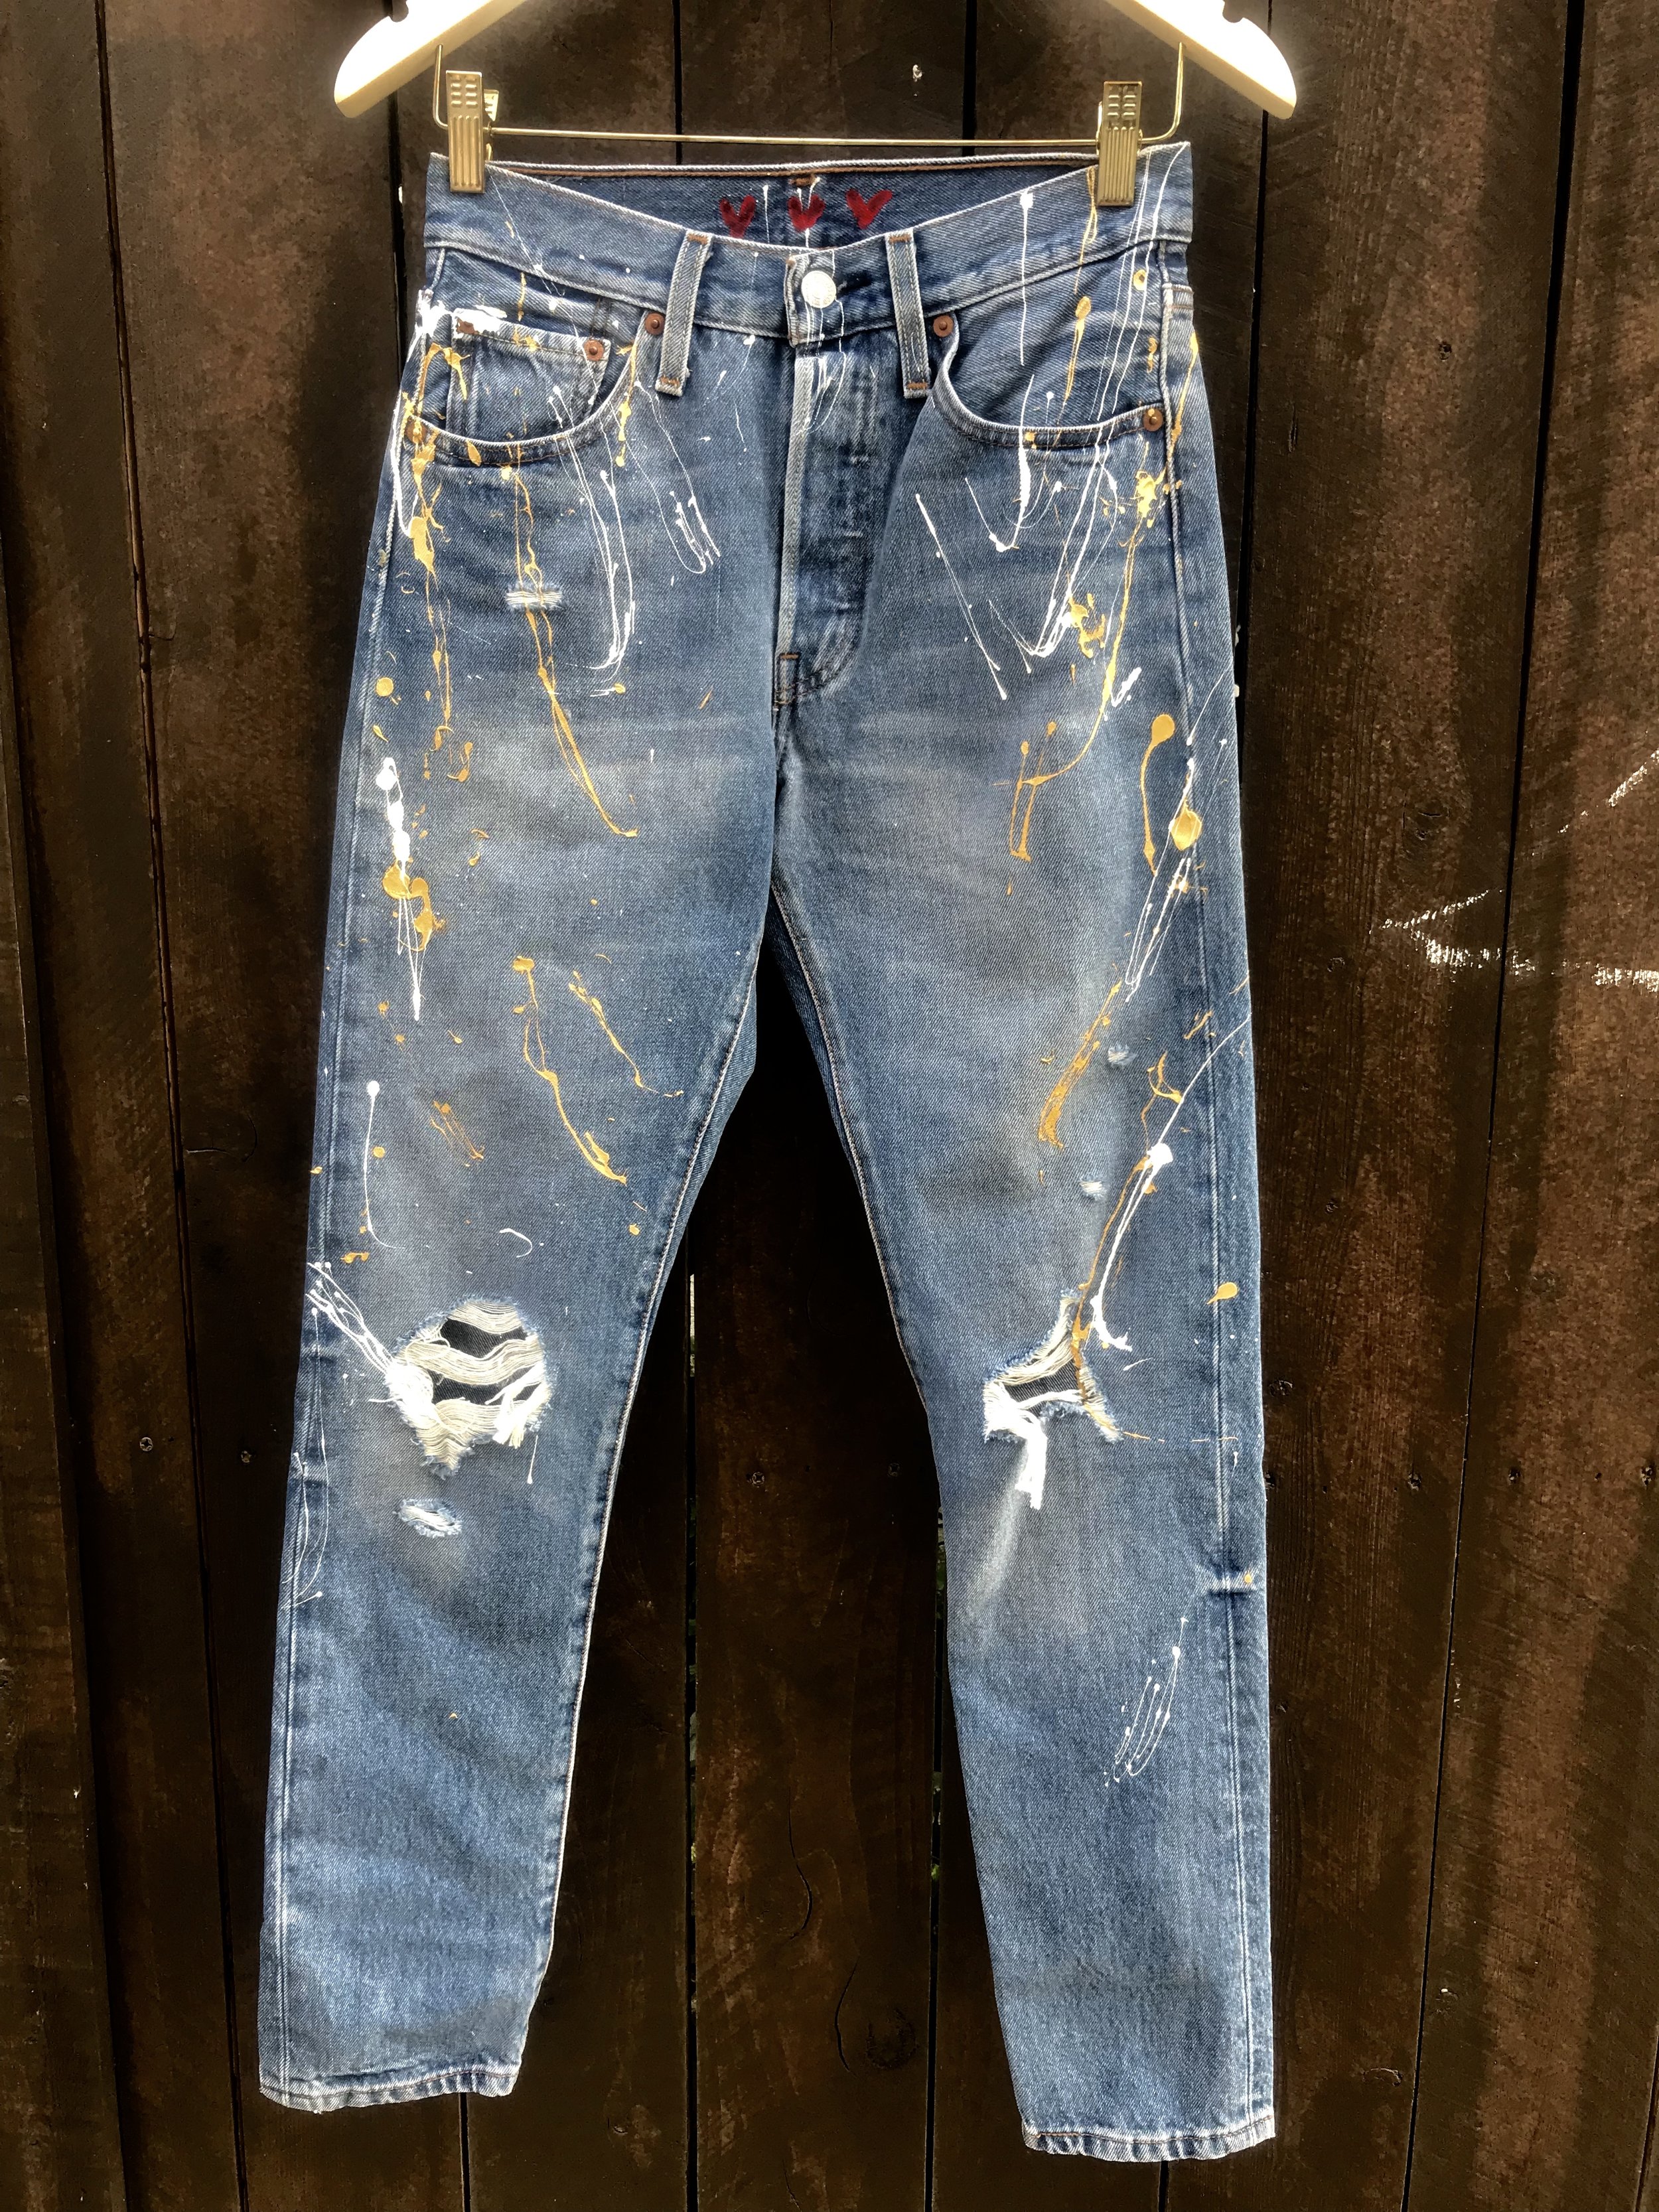 levis jeans paint